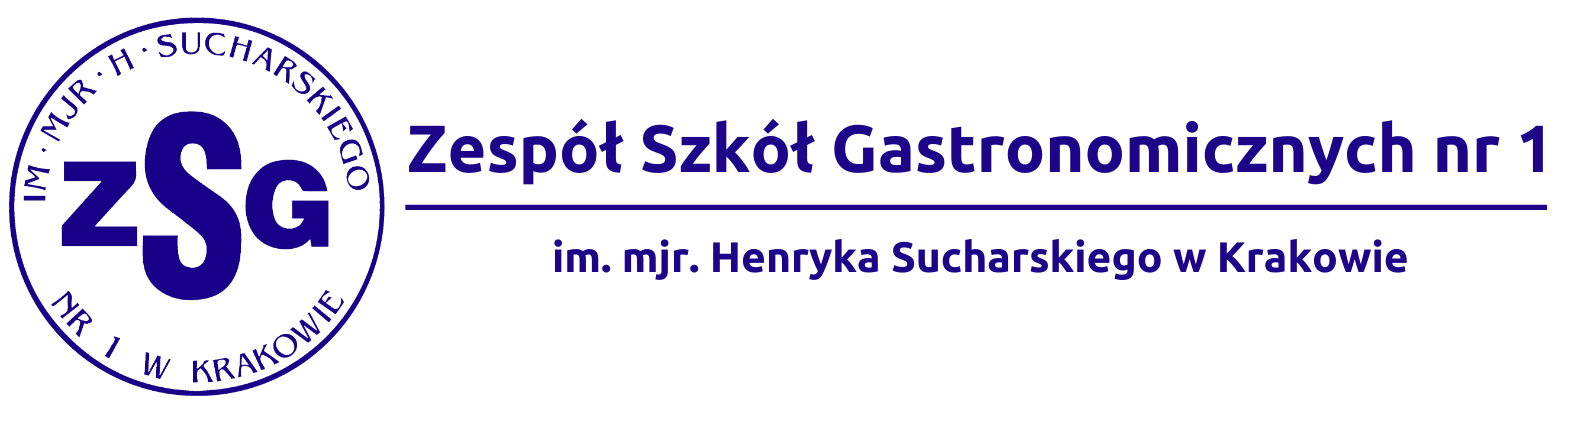 Zespół Szkół Gastronomicznych Nr 1 w Krakowie